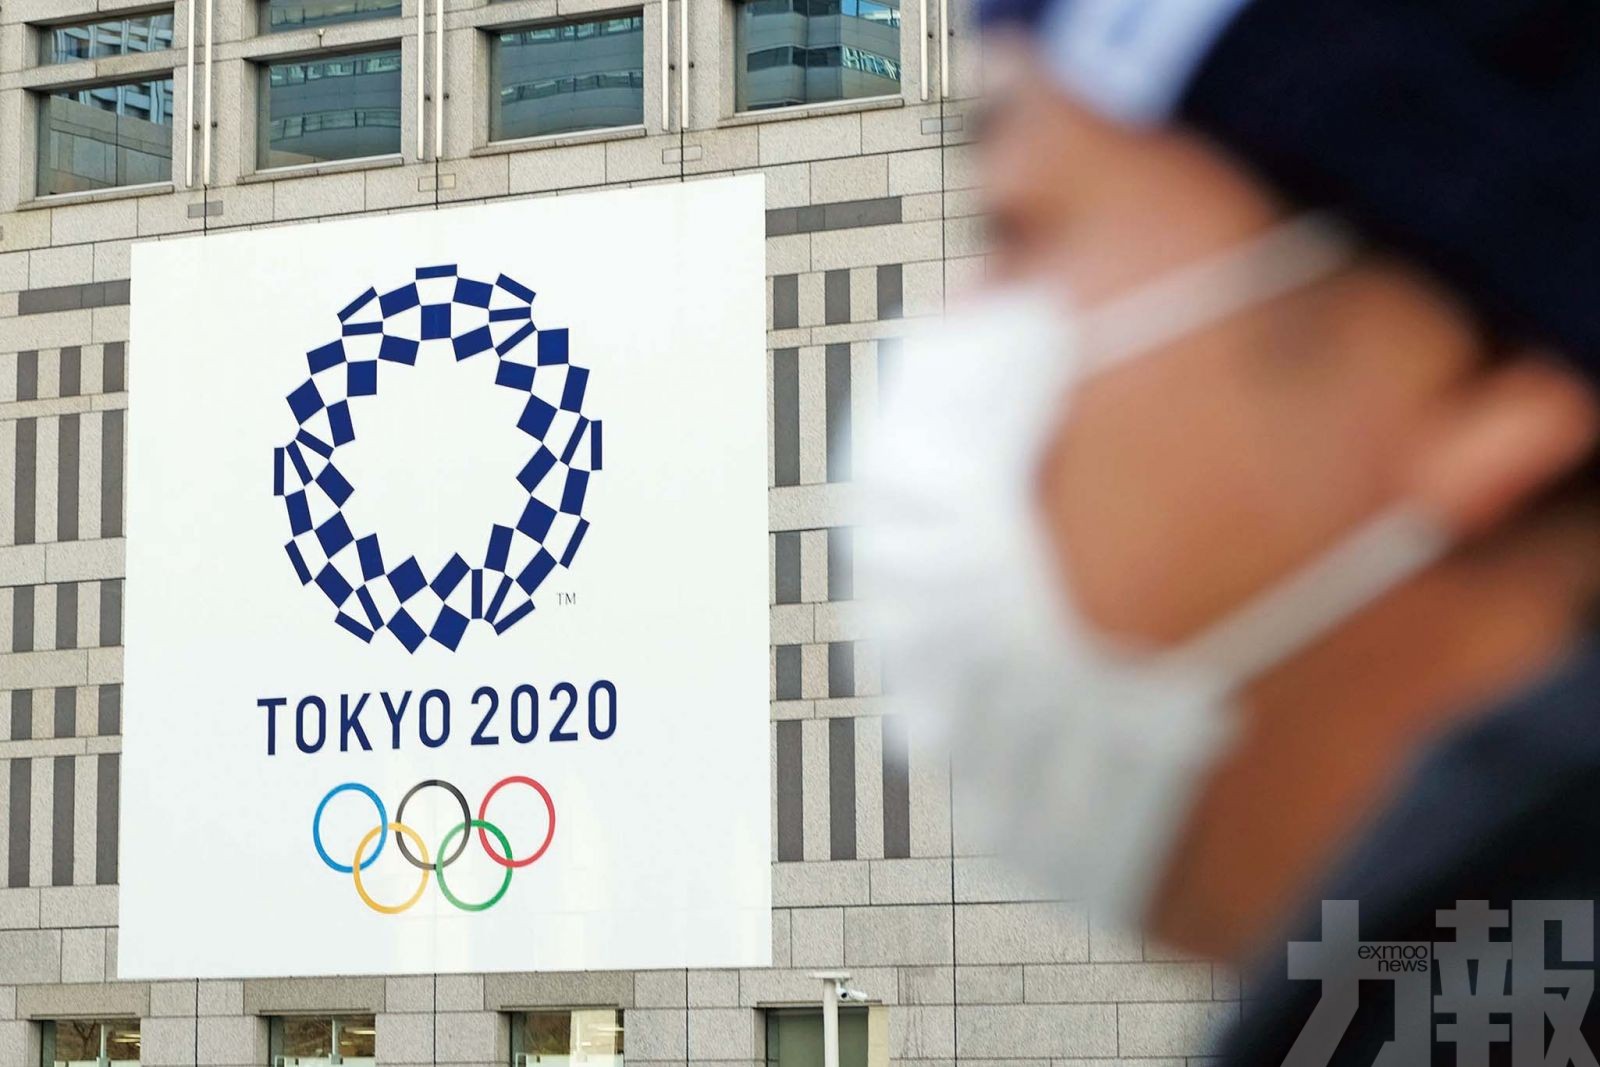 東奧組委指取消奧運門票冇水回報道失實